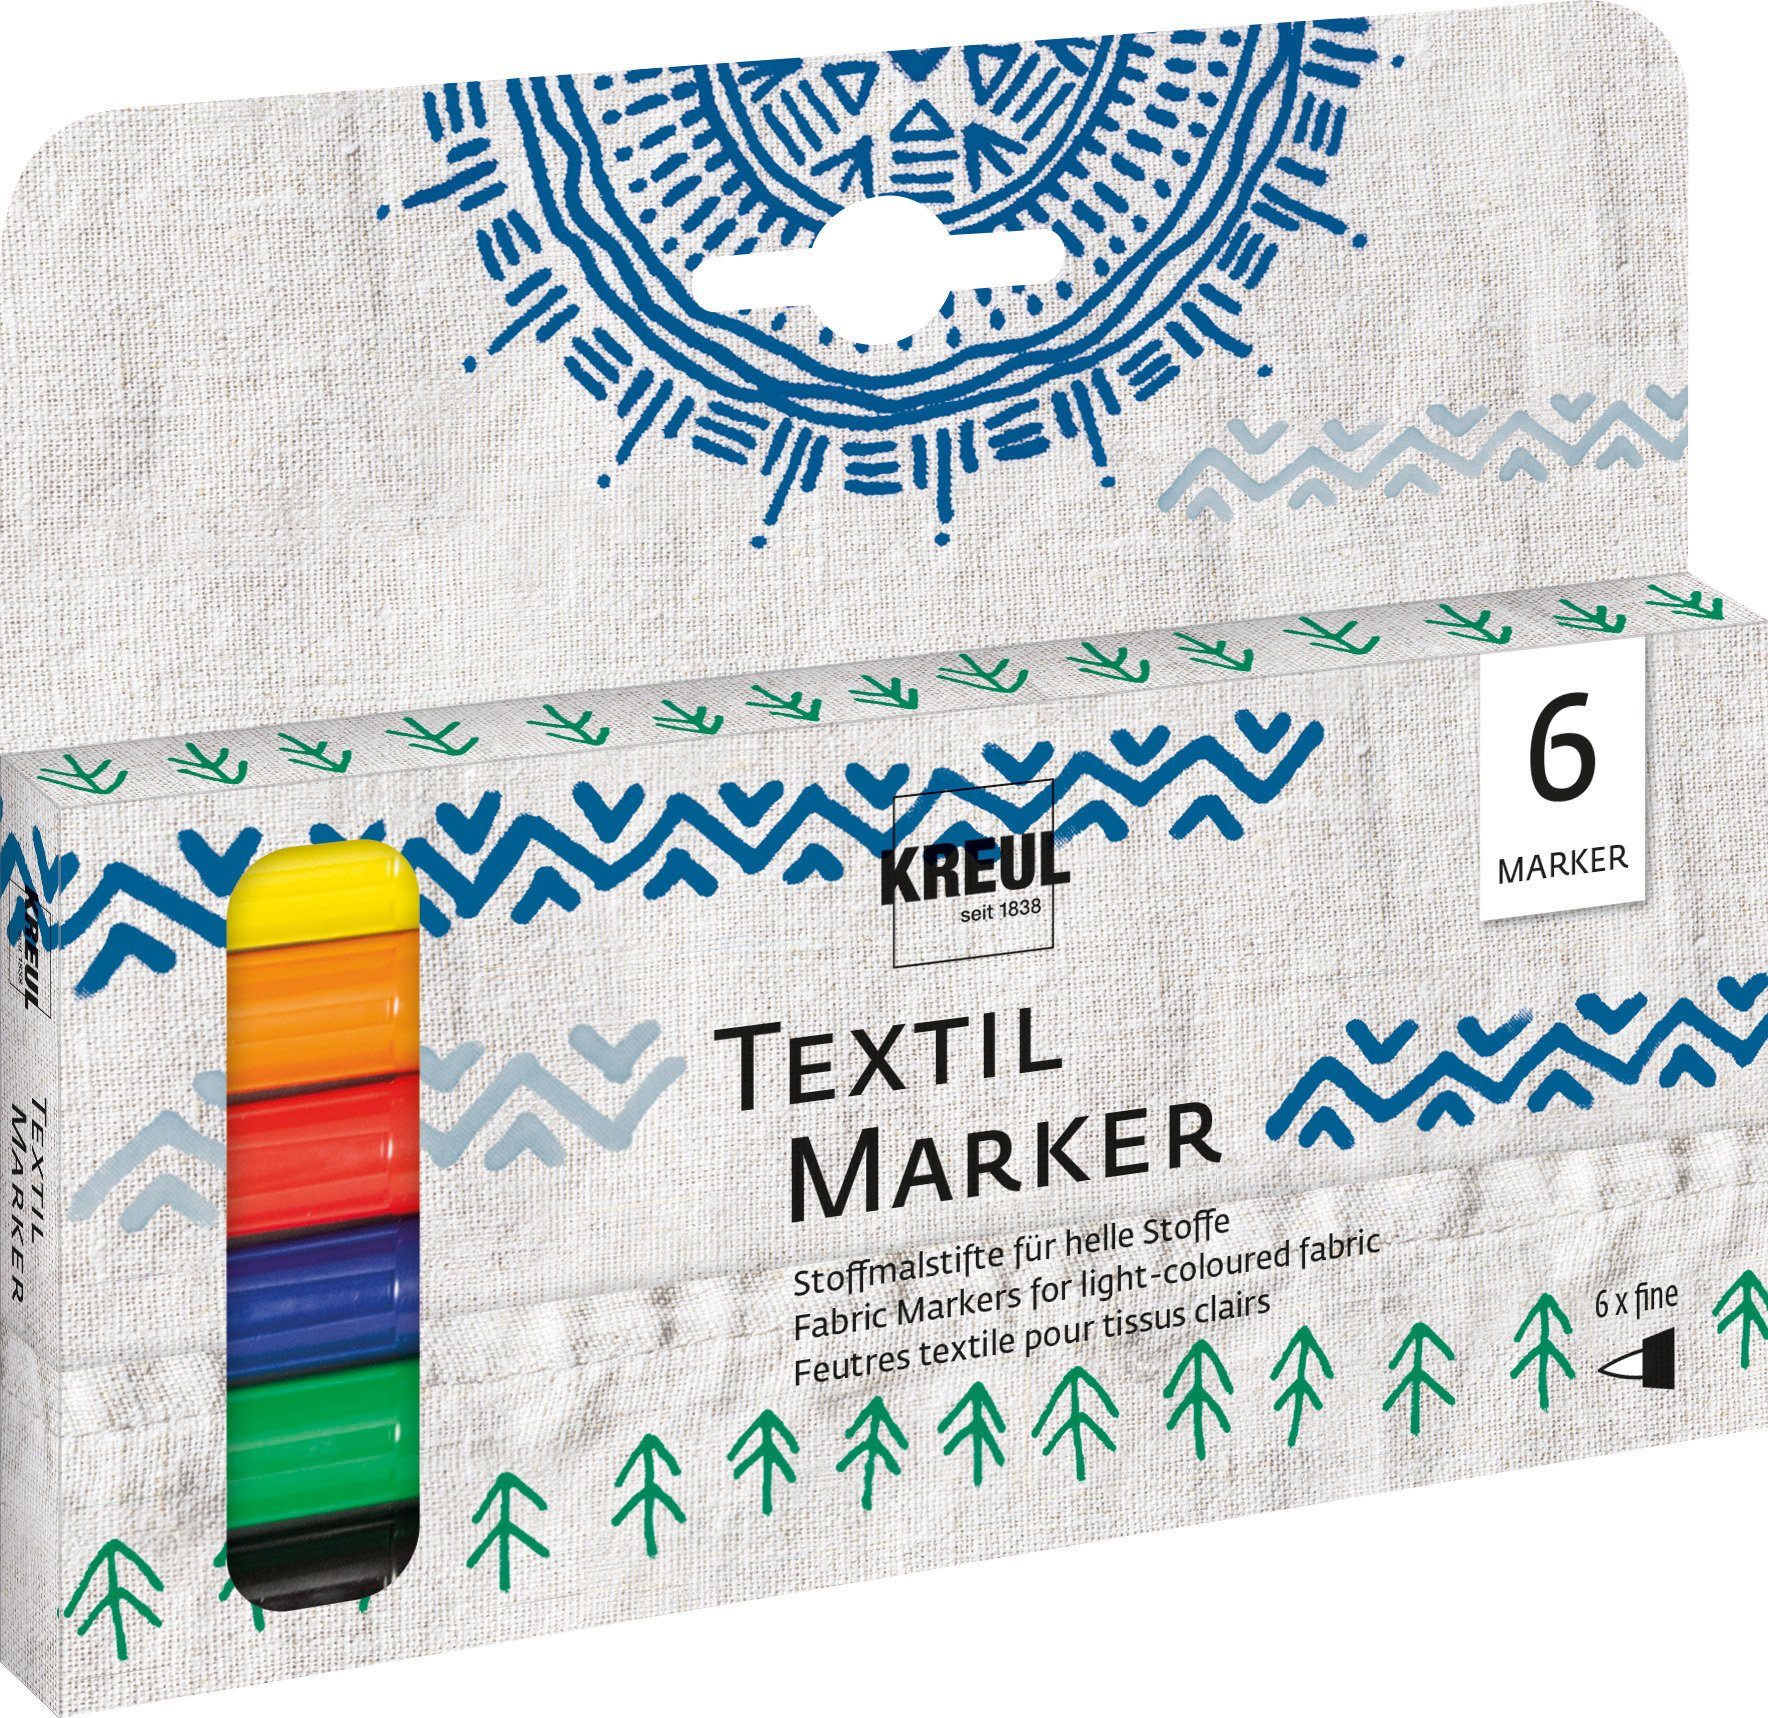 fine, Textilmarker Kreul 6er-Set Marker Textil